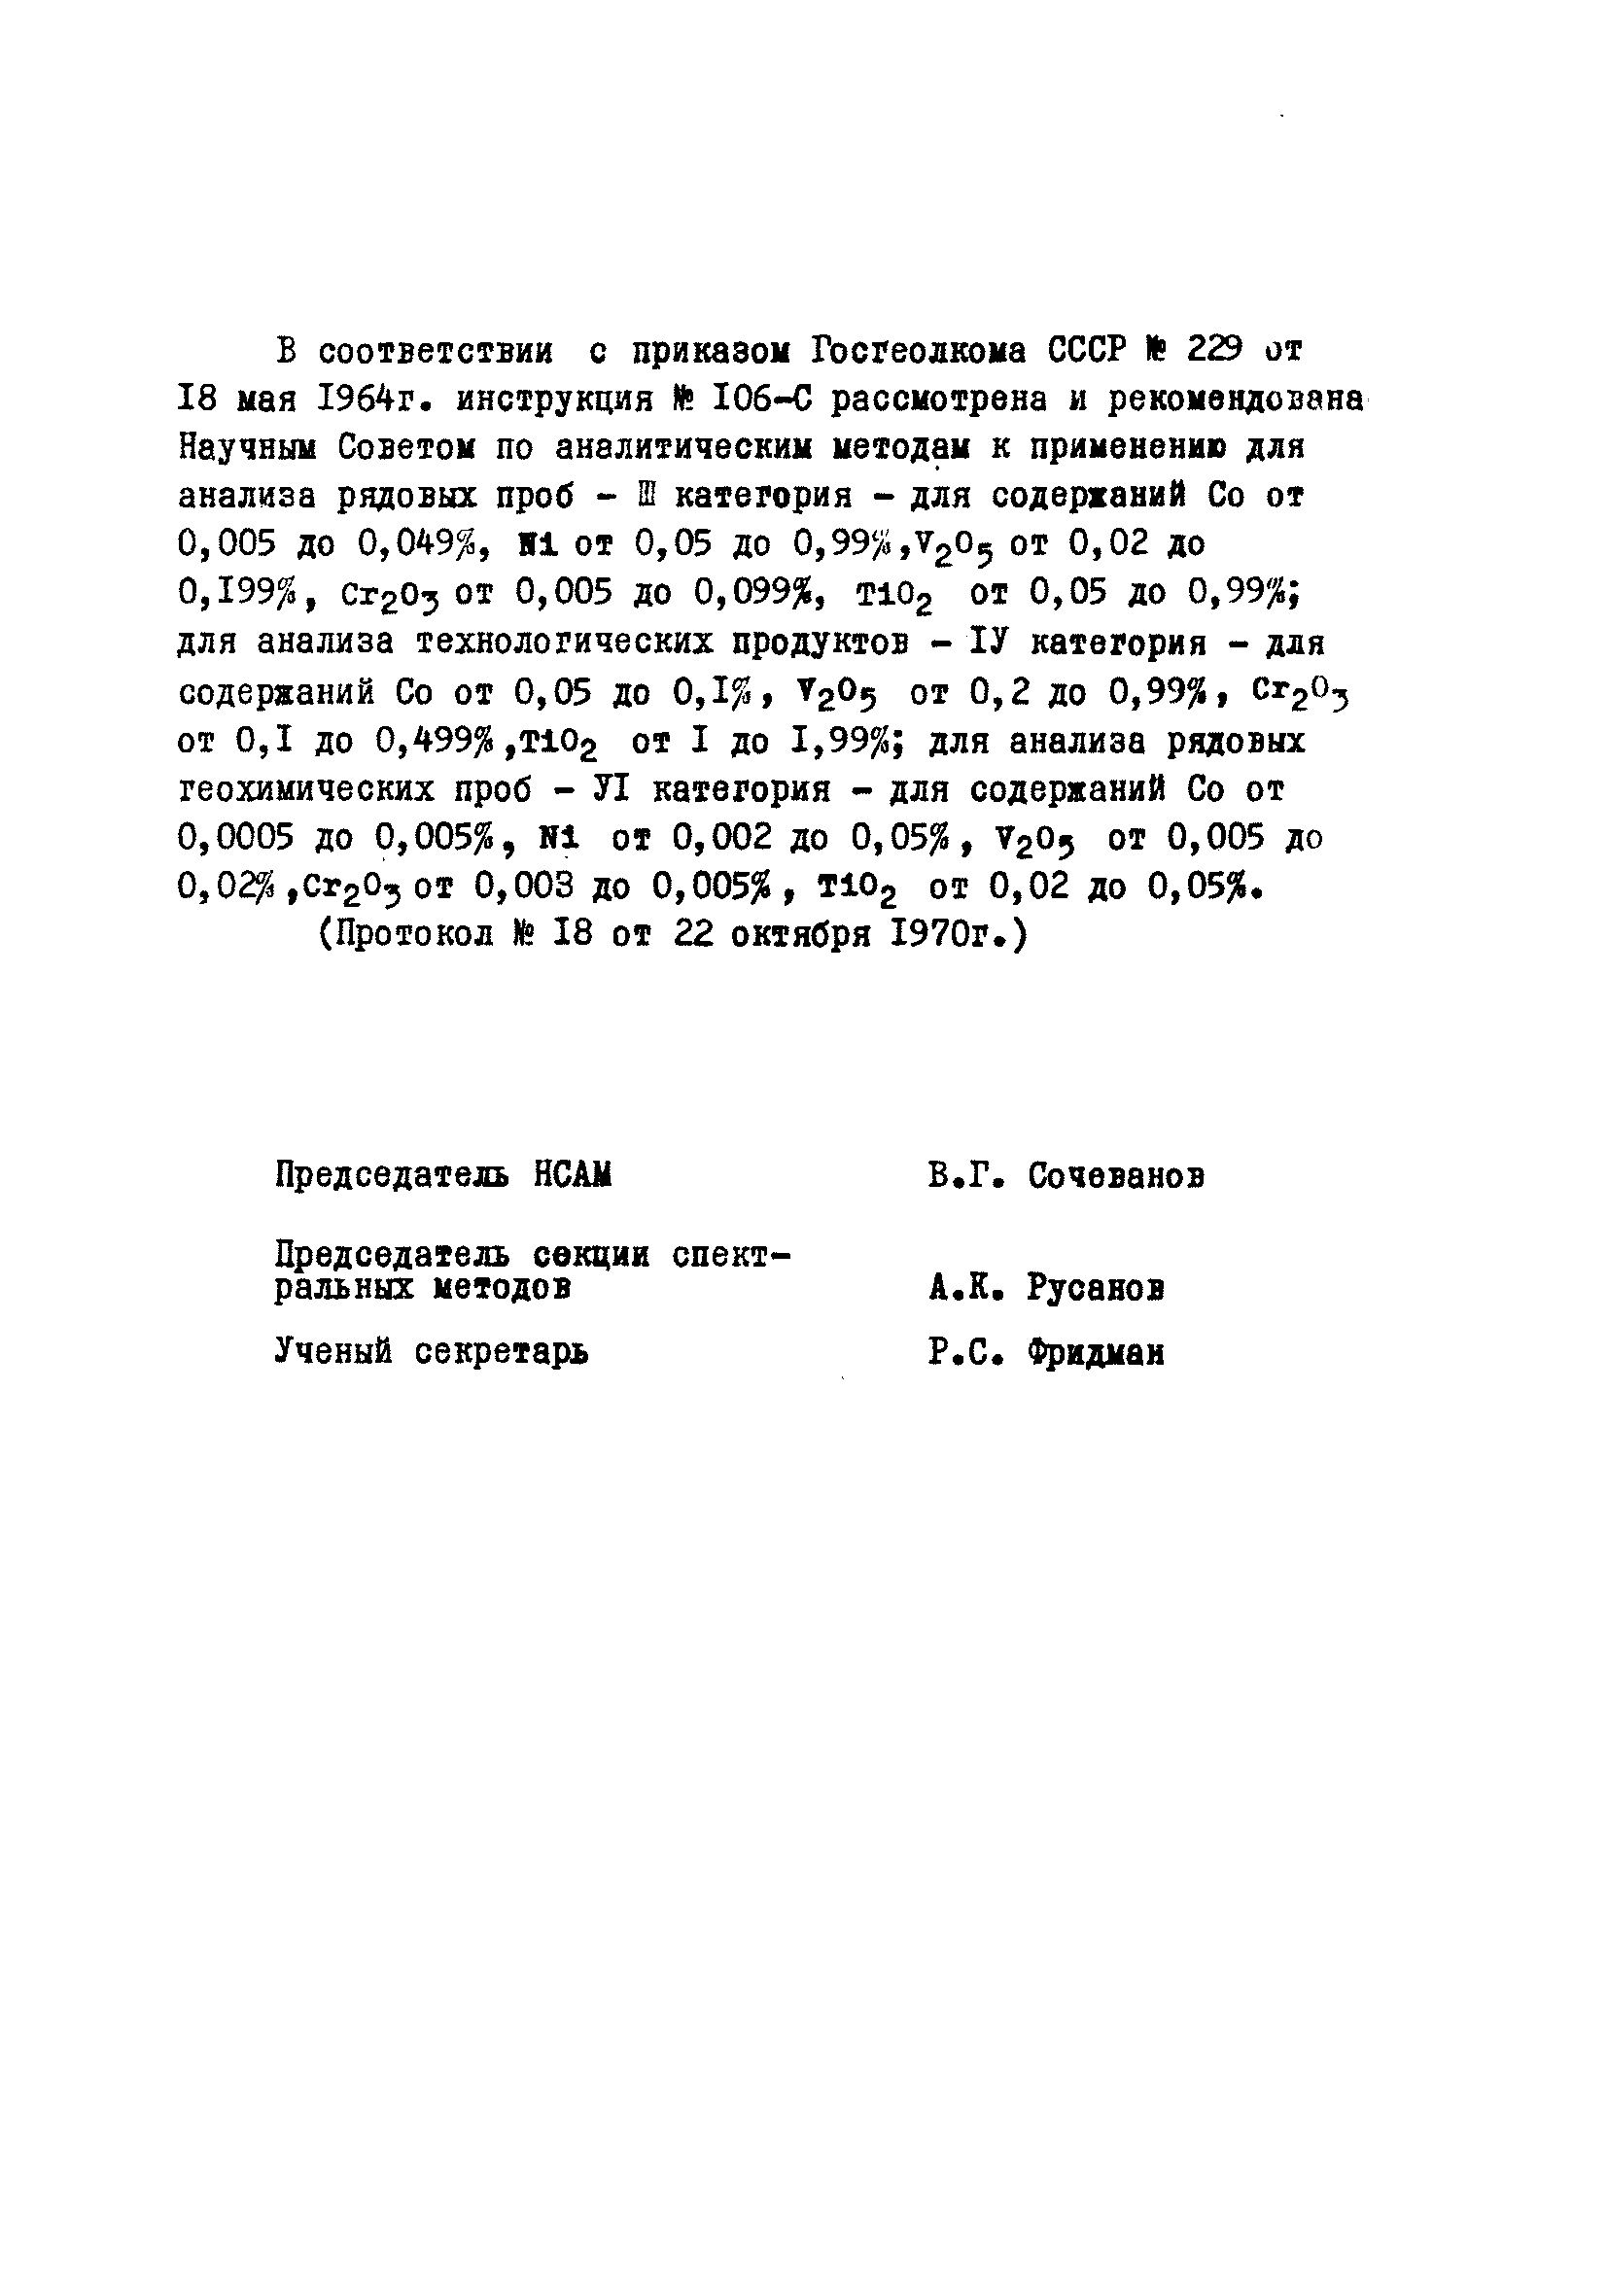 Инструкция НСАМ 106-С